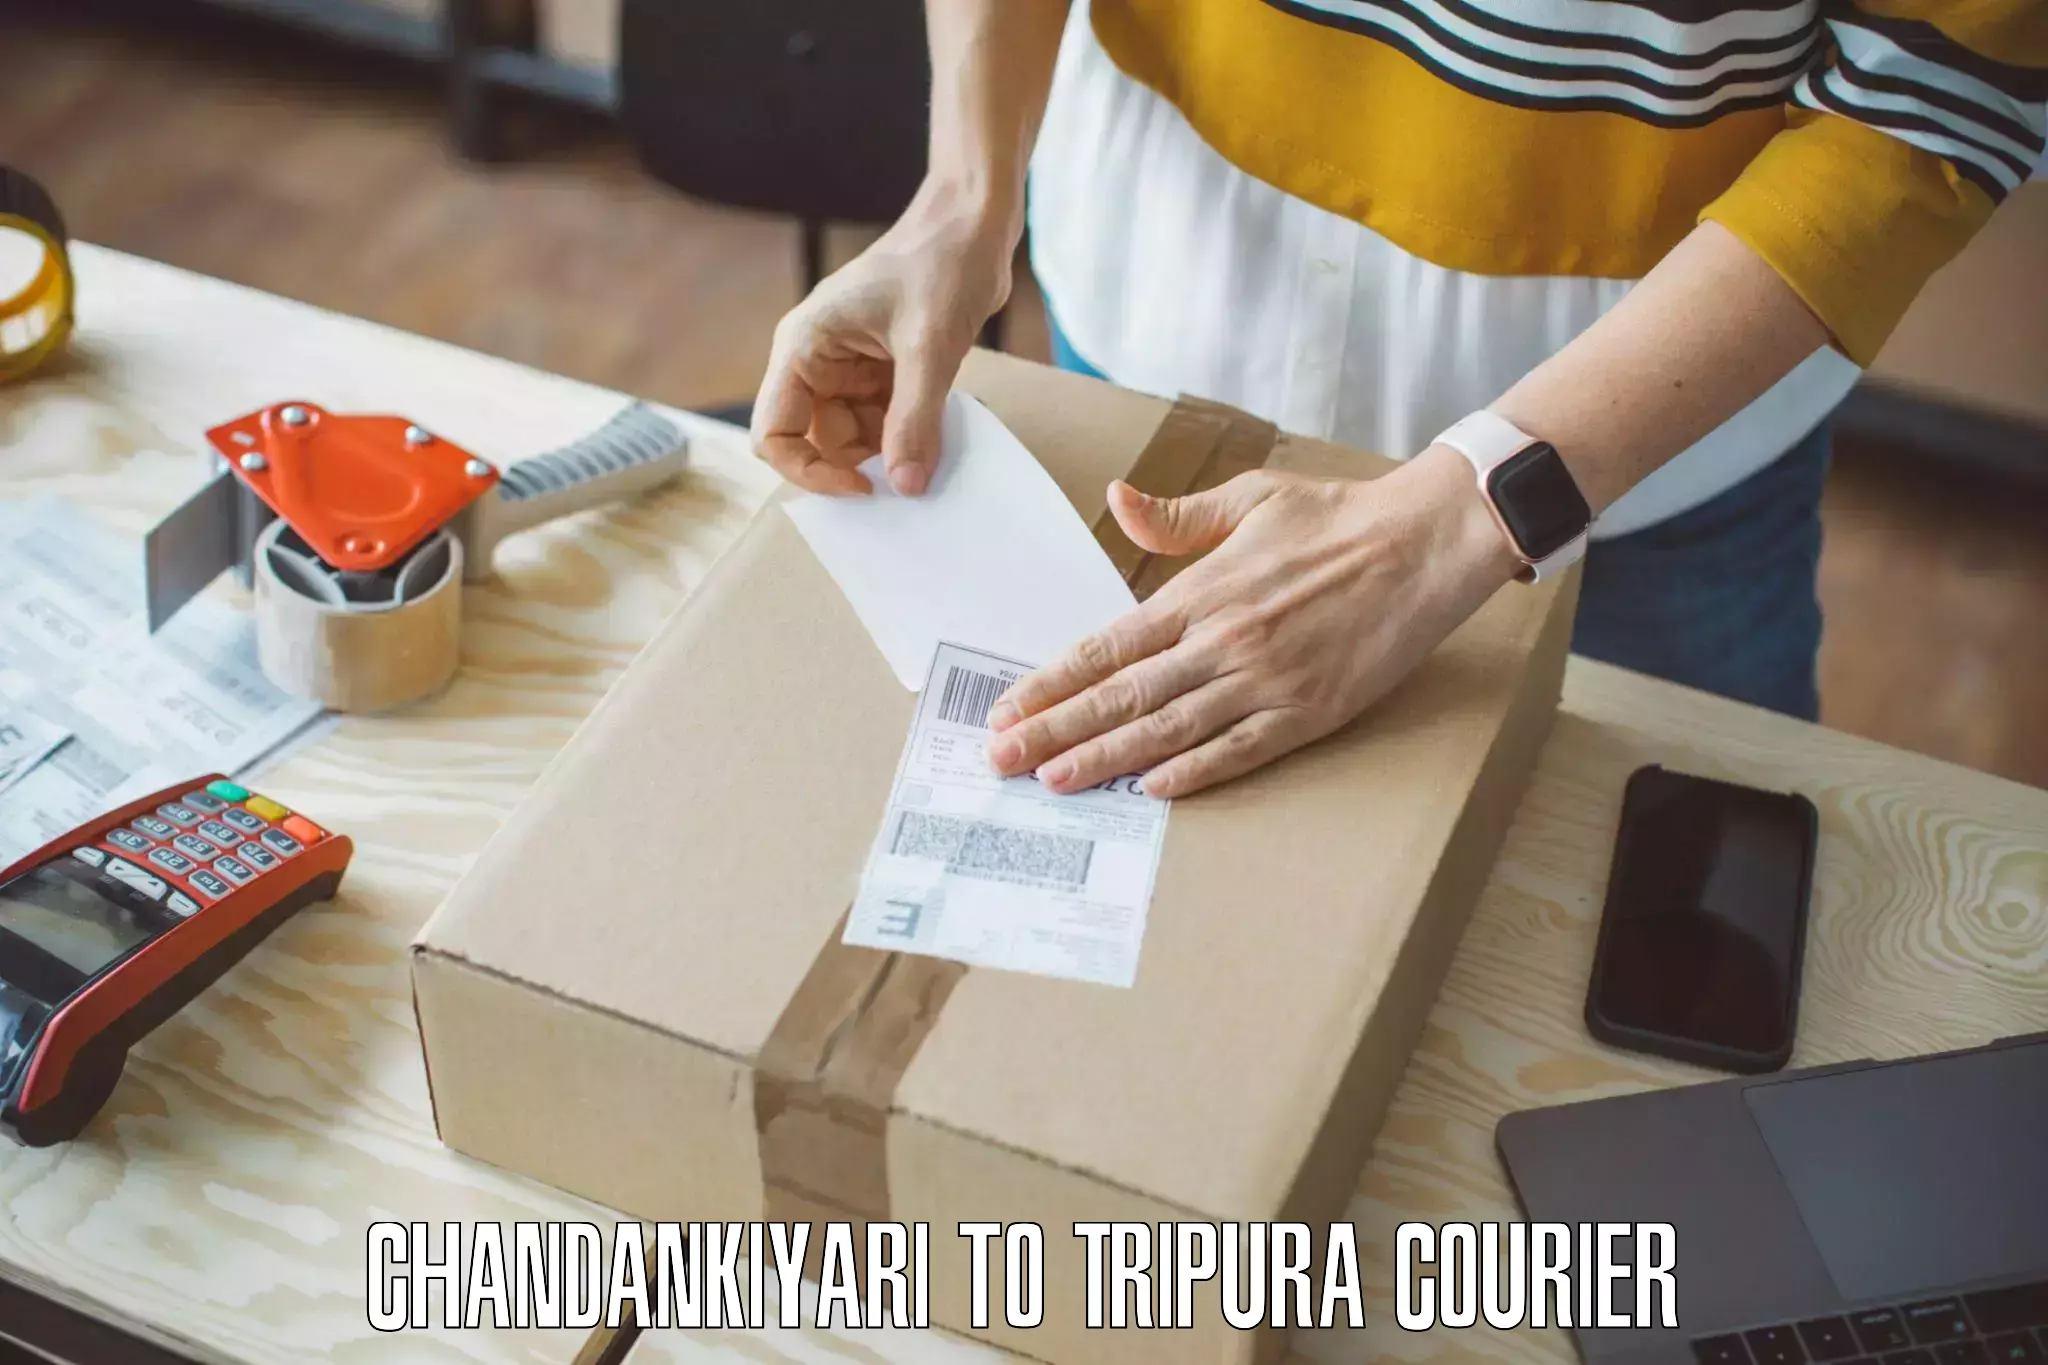 Home relocation experts Chandankiyari to Tripura